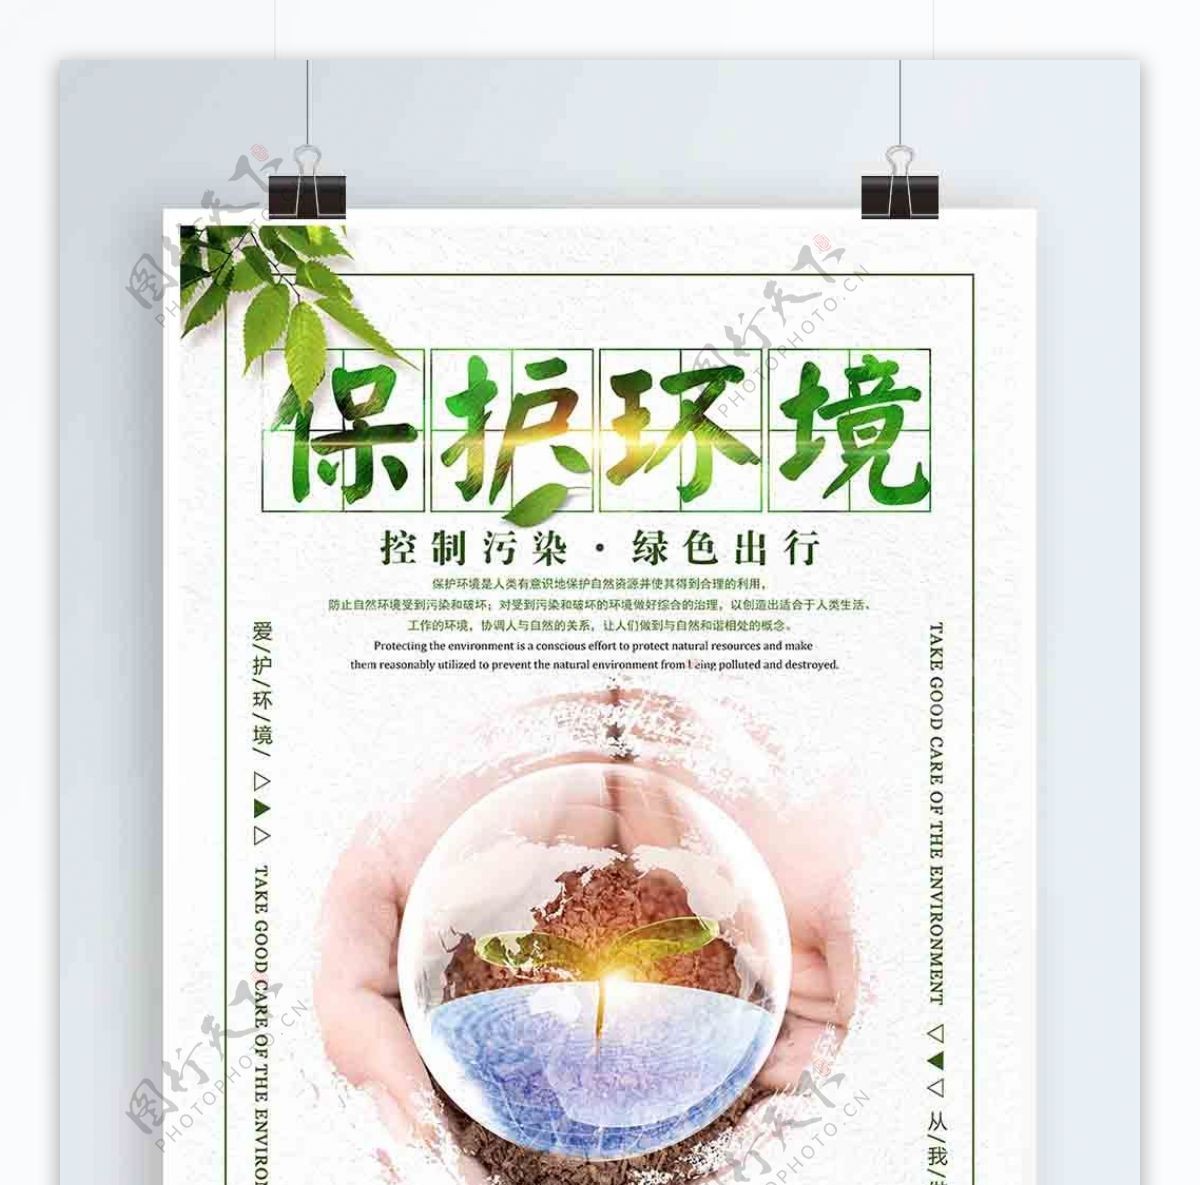 创意简约保护环境公益宣传海报设计